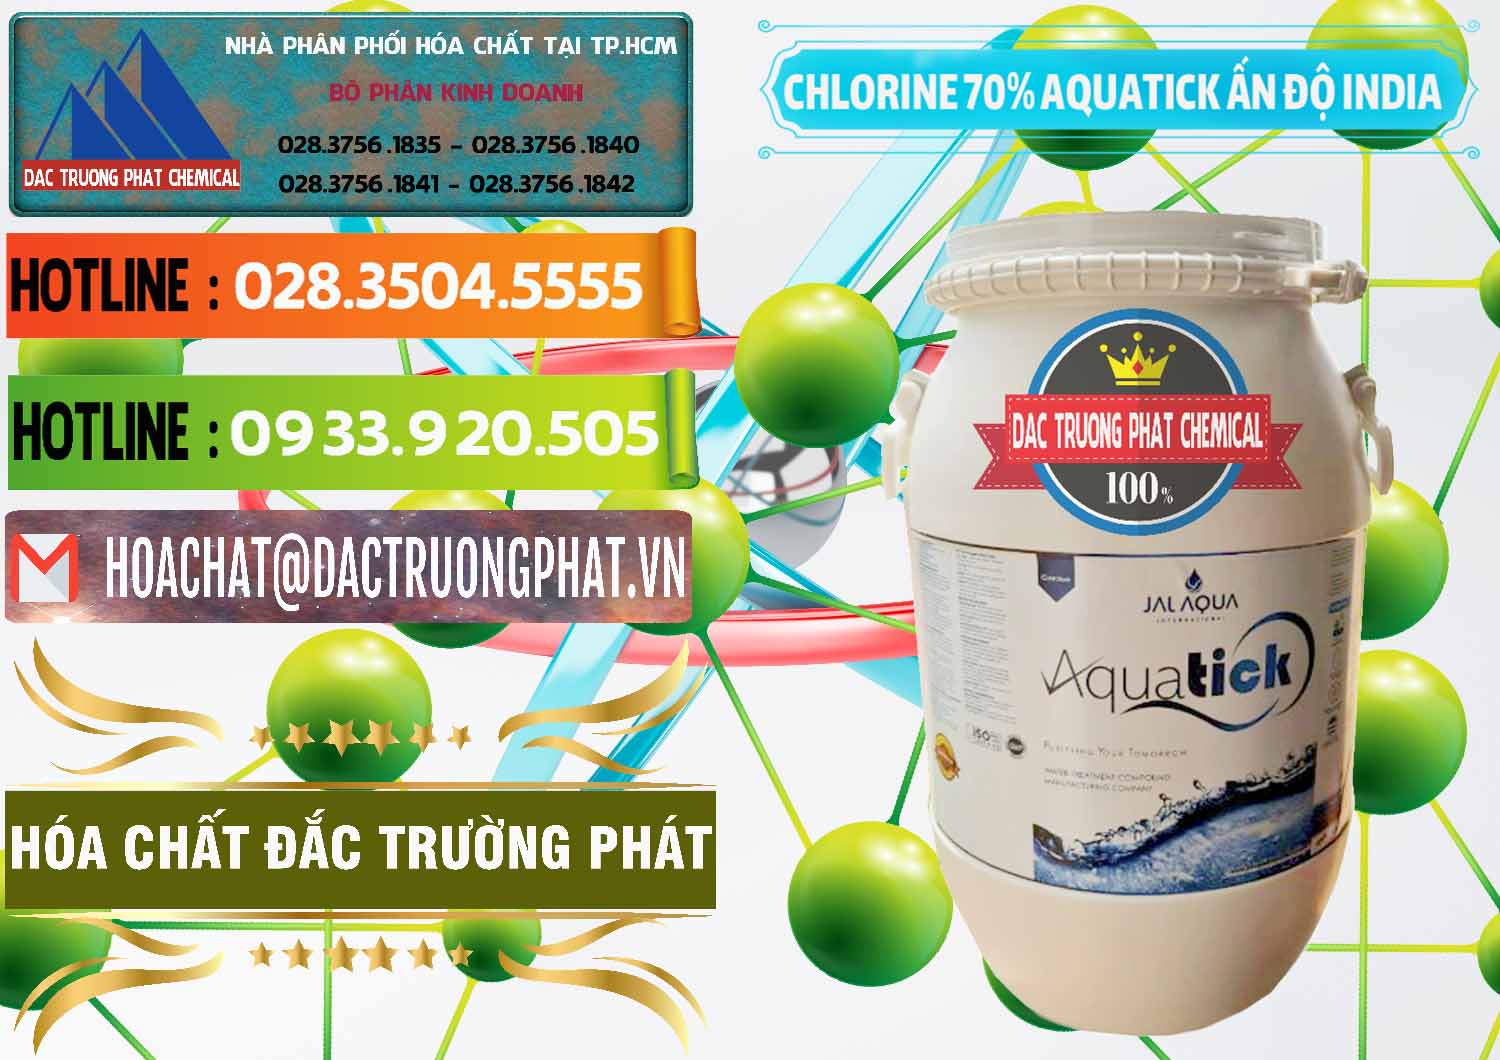 Đơn vị bán - cung cấp Chlorine – Clorin 70% Aquatick Jal Aqua Ấn Độ India - 0215 - Công ty cung cấp _ kinh doanh hóa chất tại TP.HCM - cungcaphoachat.com.vn